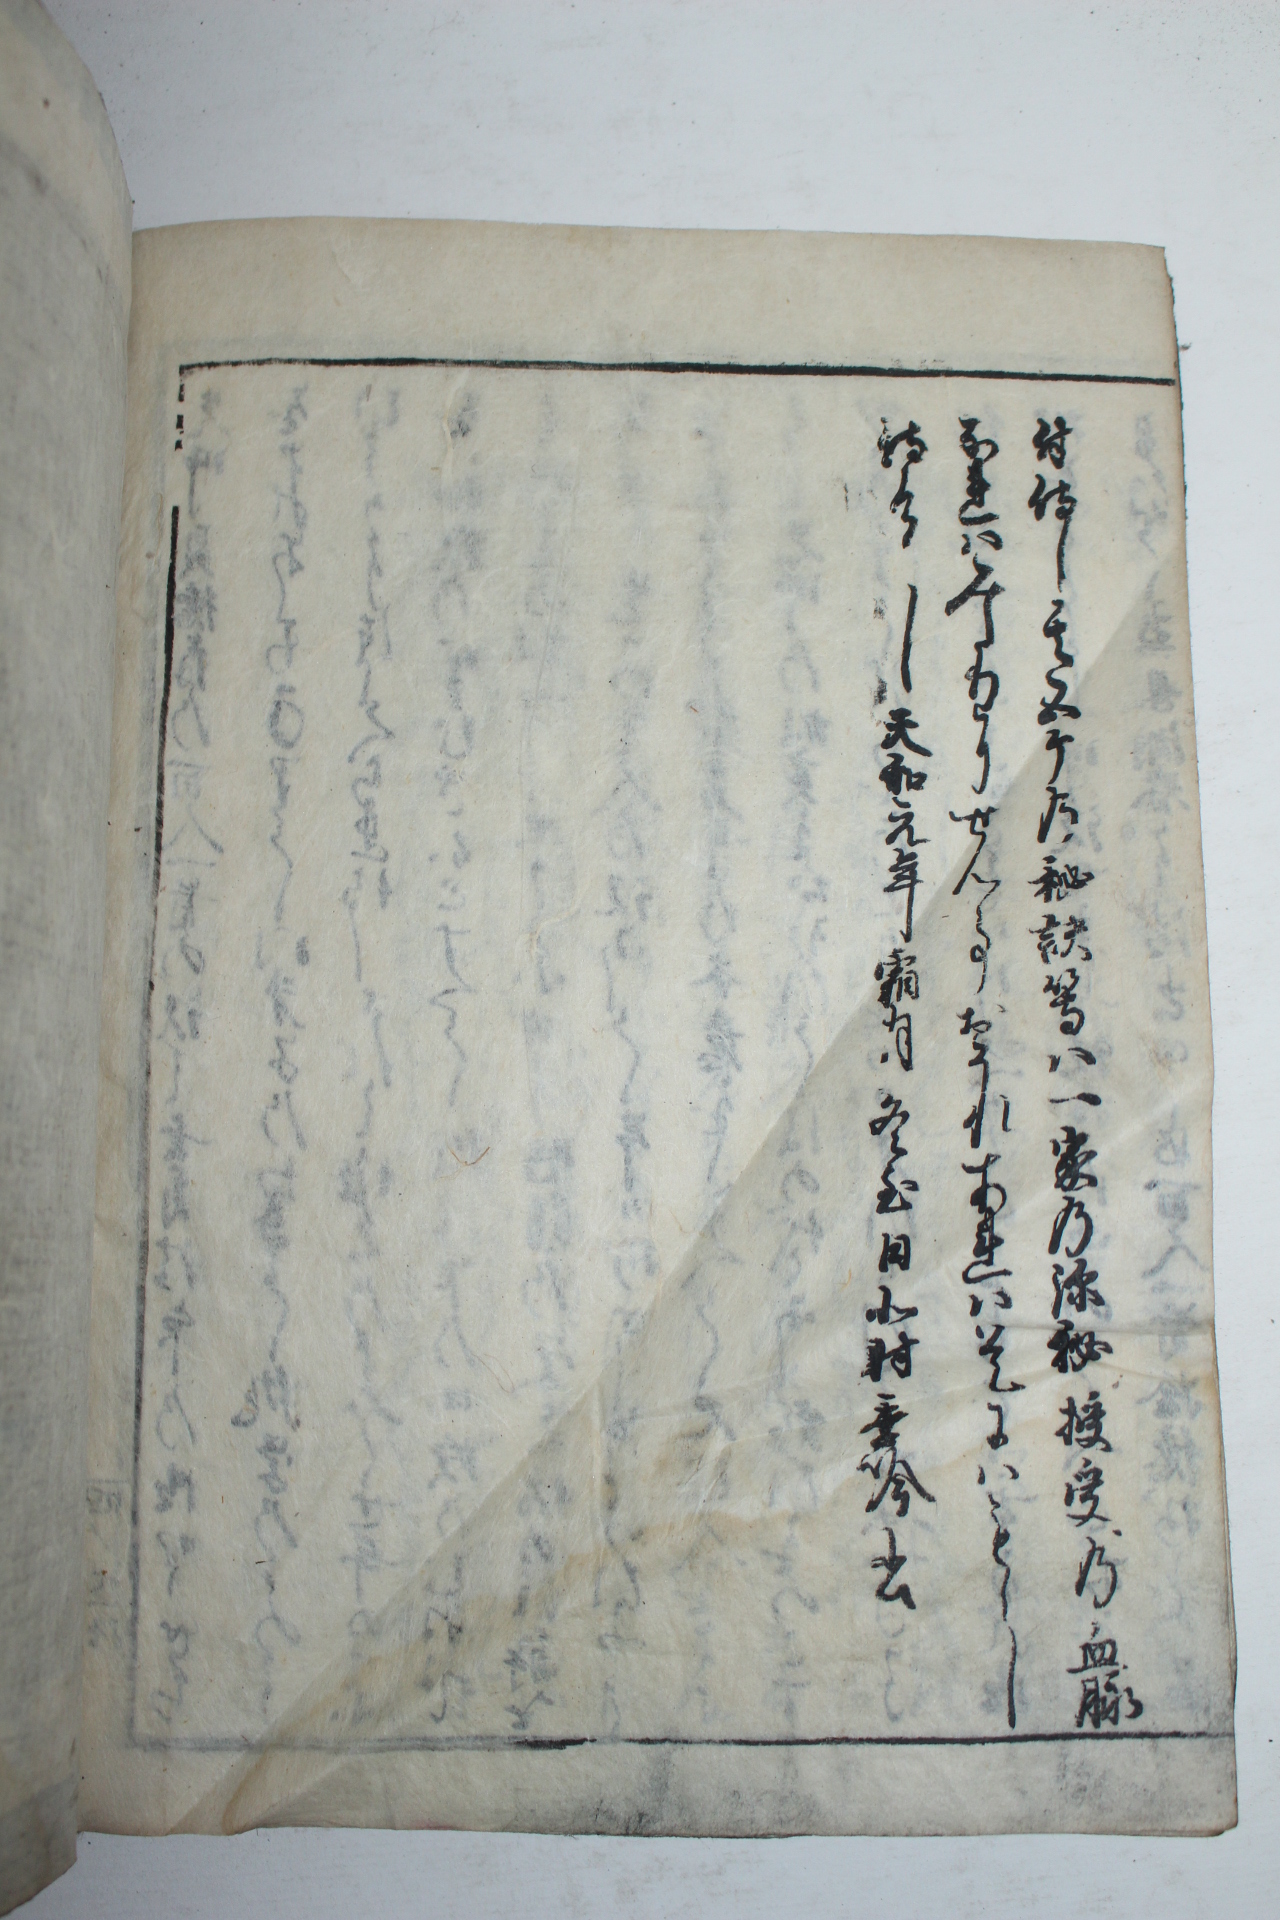 1681년(天和元年)발문이 있는 일본목판본 백인수(百人首) 1책